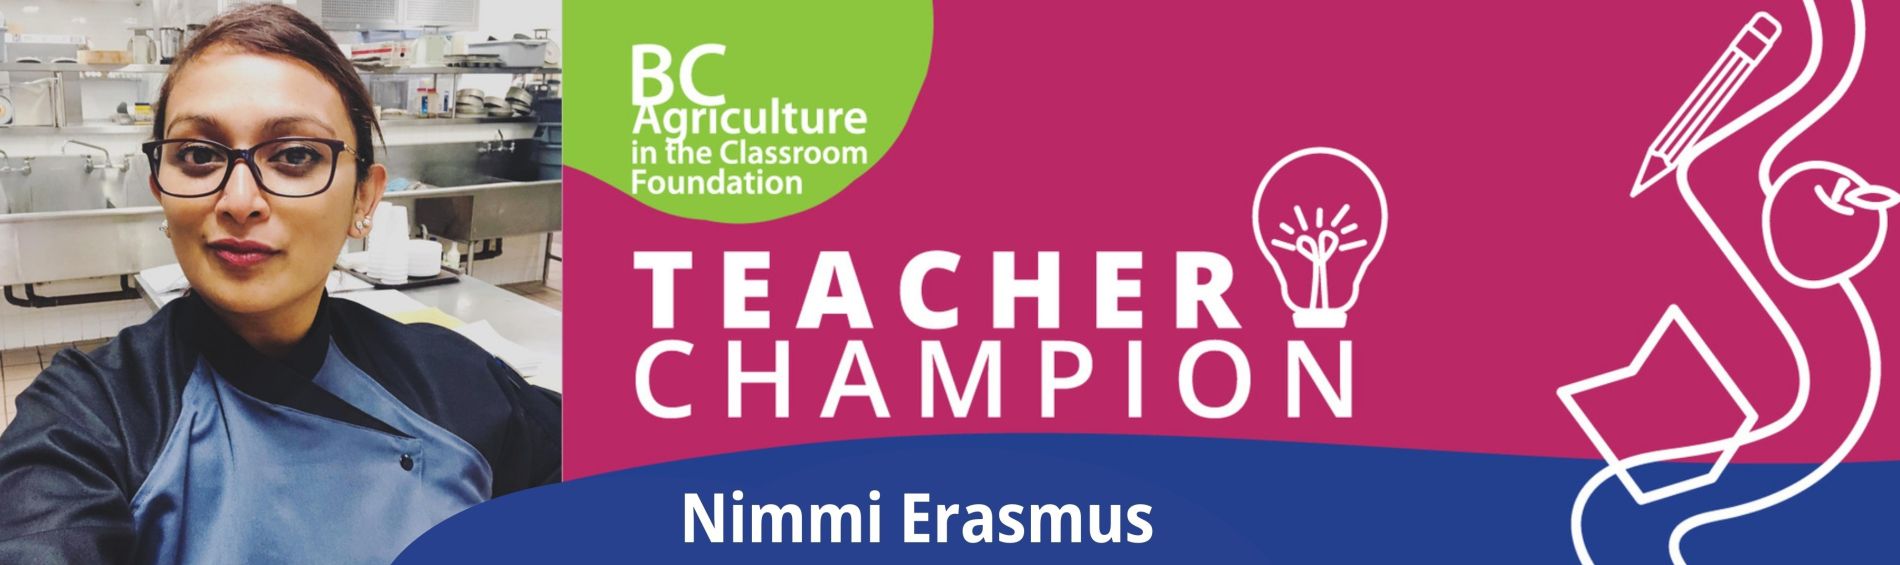 Teacher Champion - Nimmi Erasmus